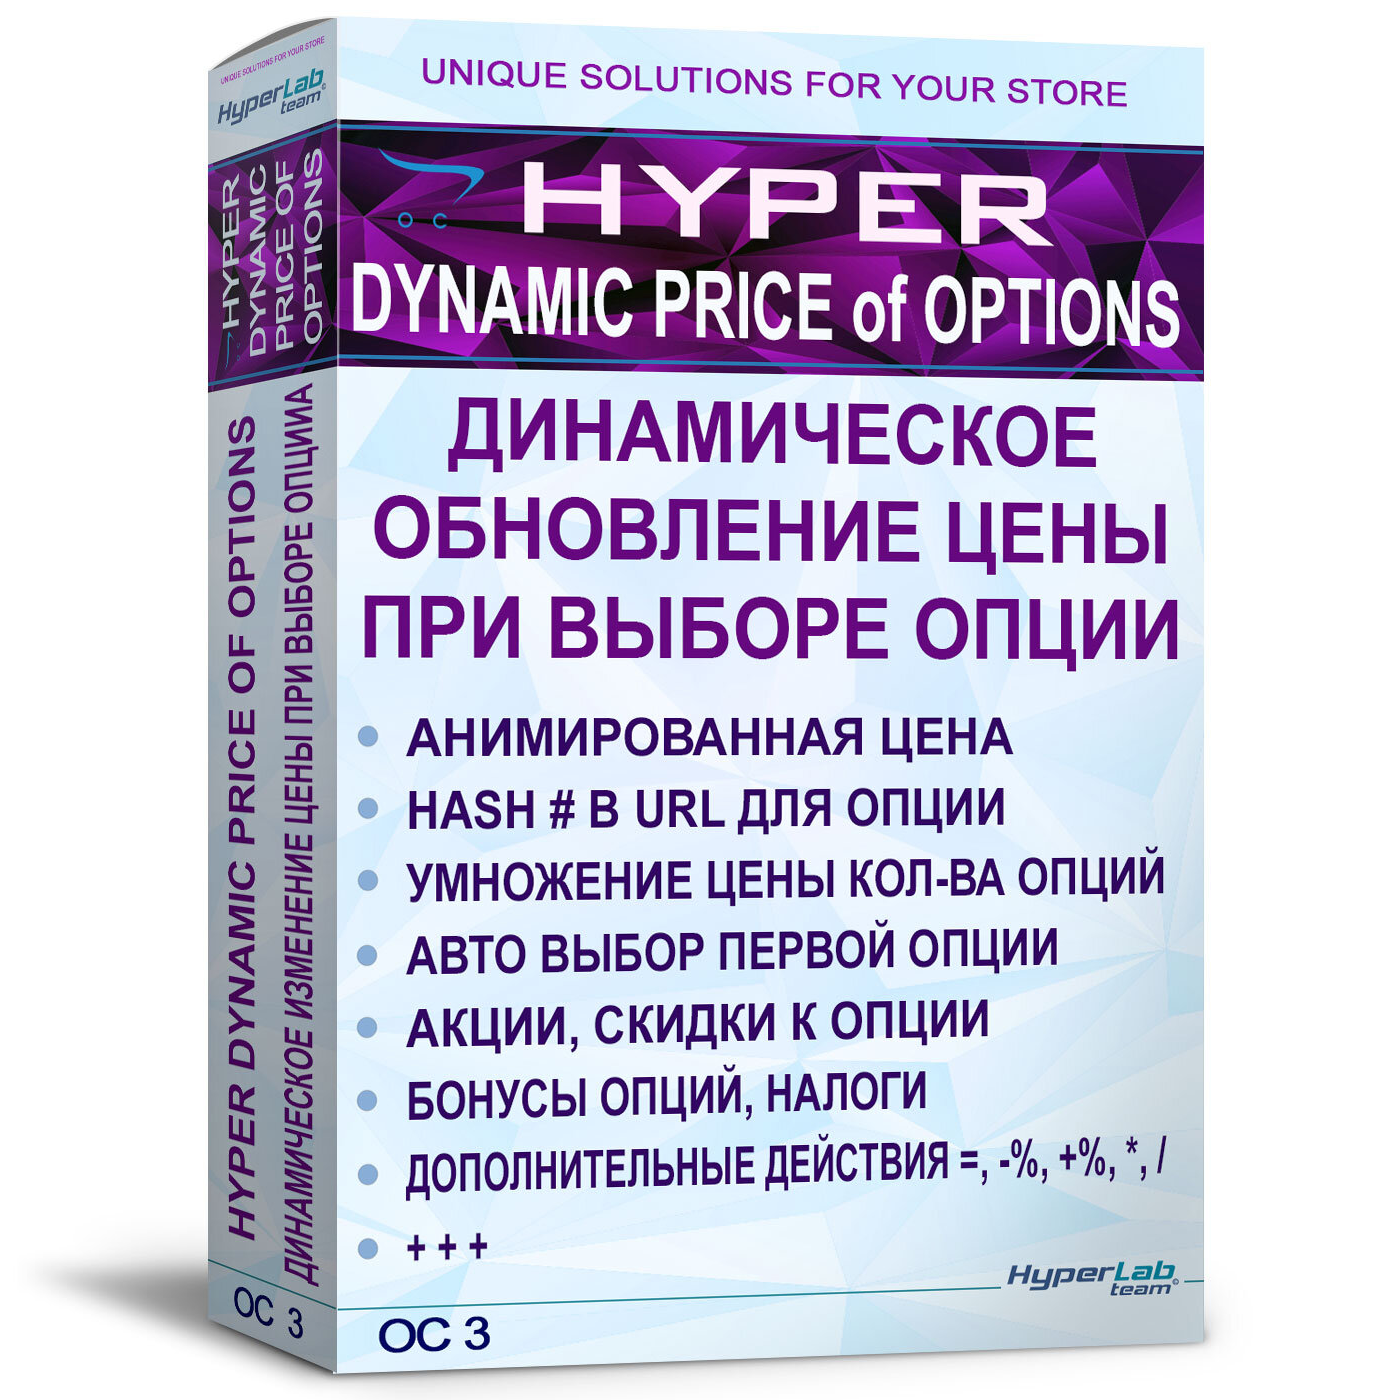 [OC3] Обновление цены при выборе опции, без AJAX - HYPER Dynamic price of options